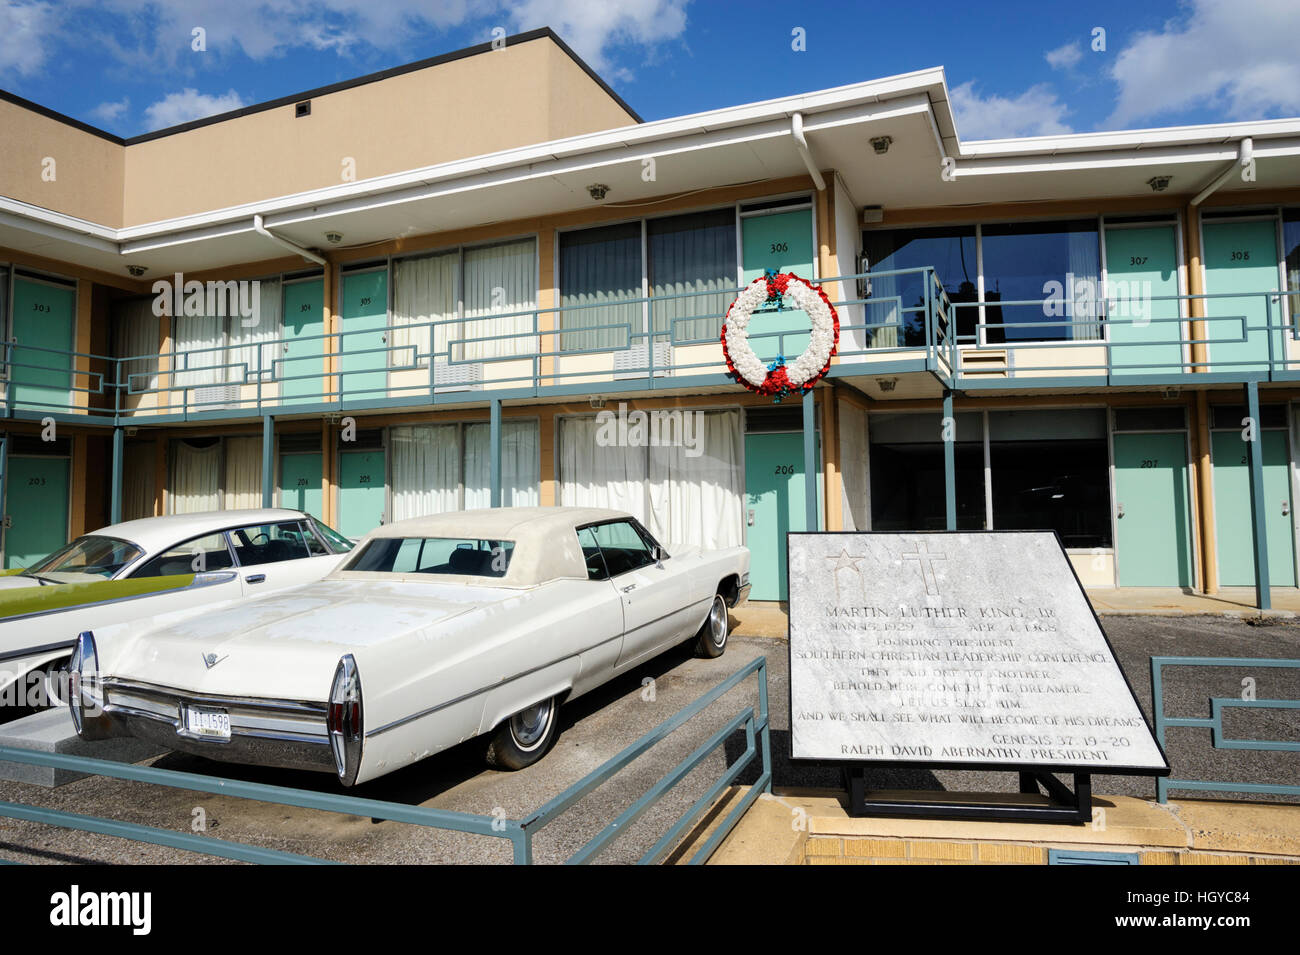 Fuori dalla stanza 306, Lorraine Motel, dove Martin Luther King fu assassinato nel 1968. Memphis, Tennessee Foto Stock